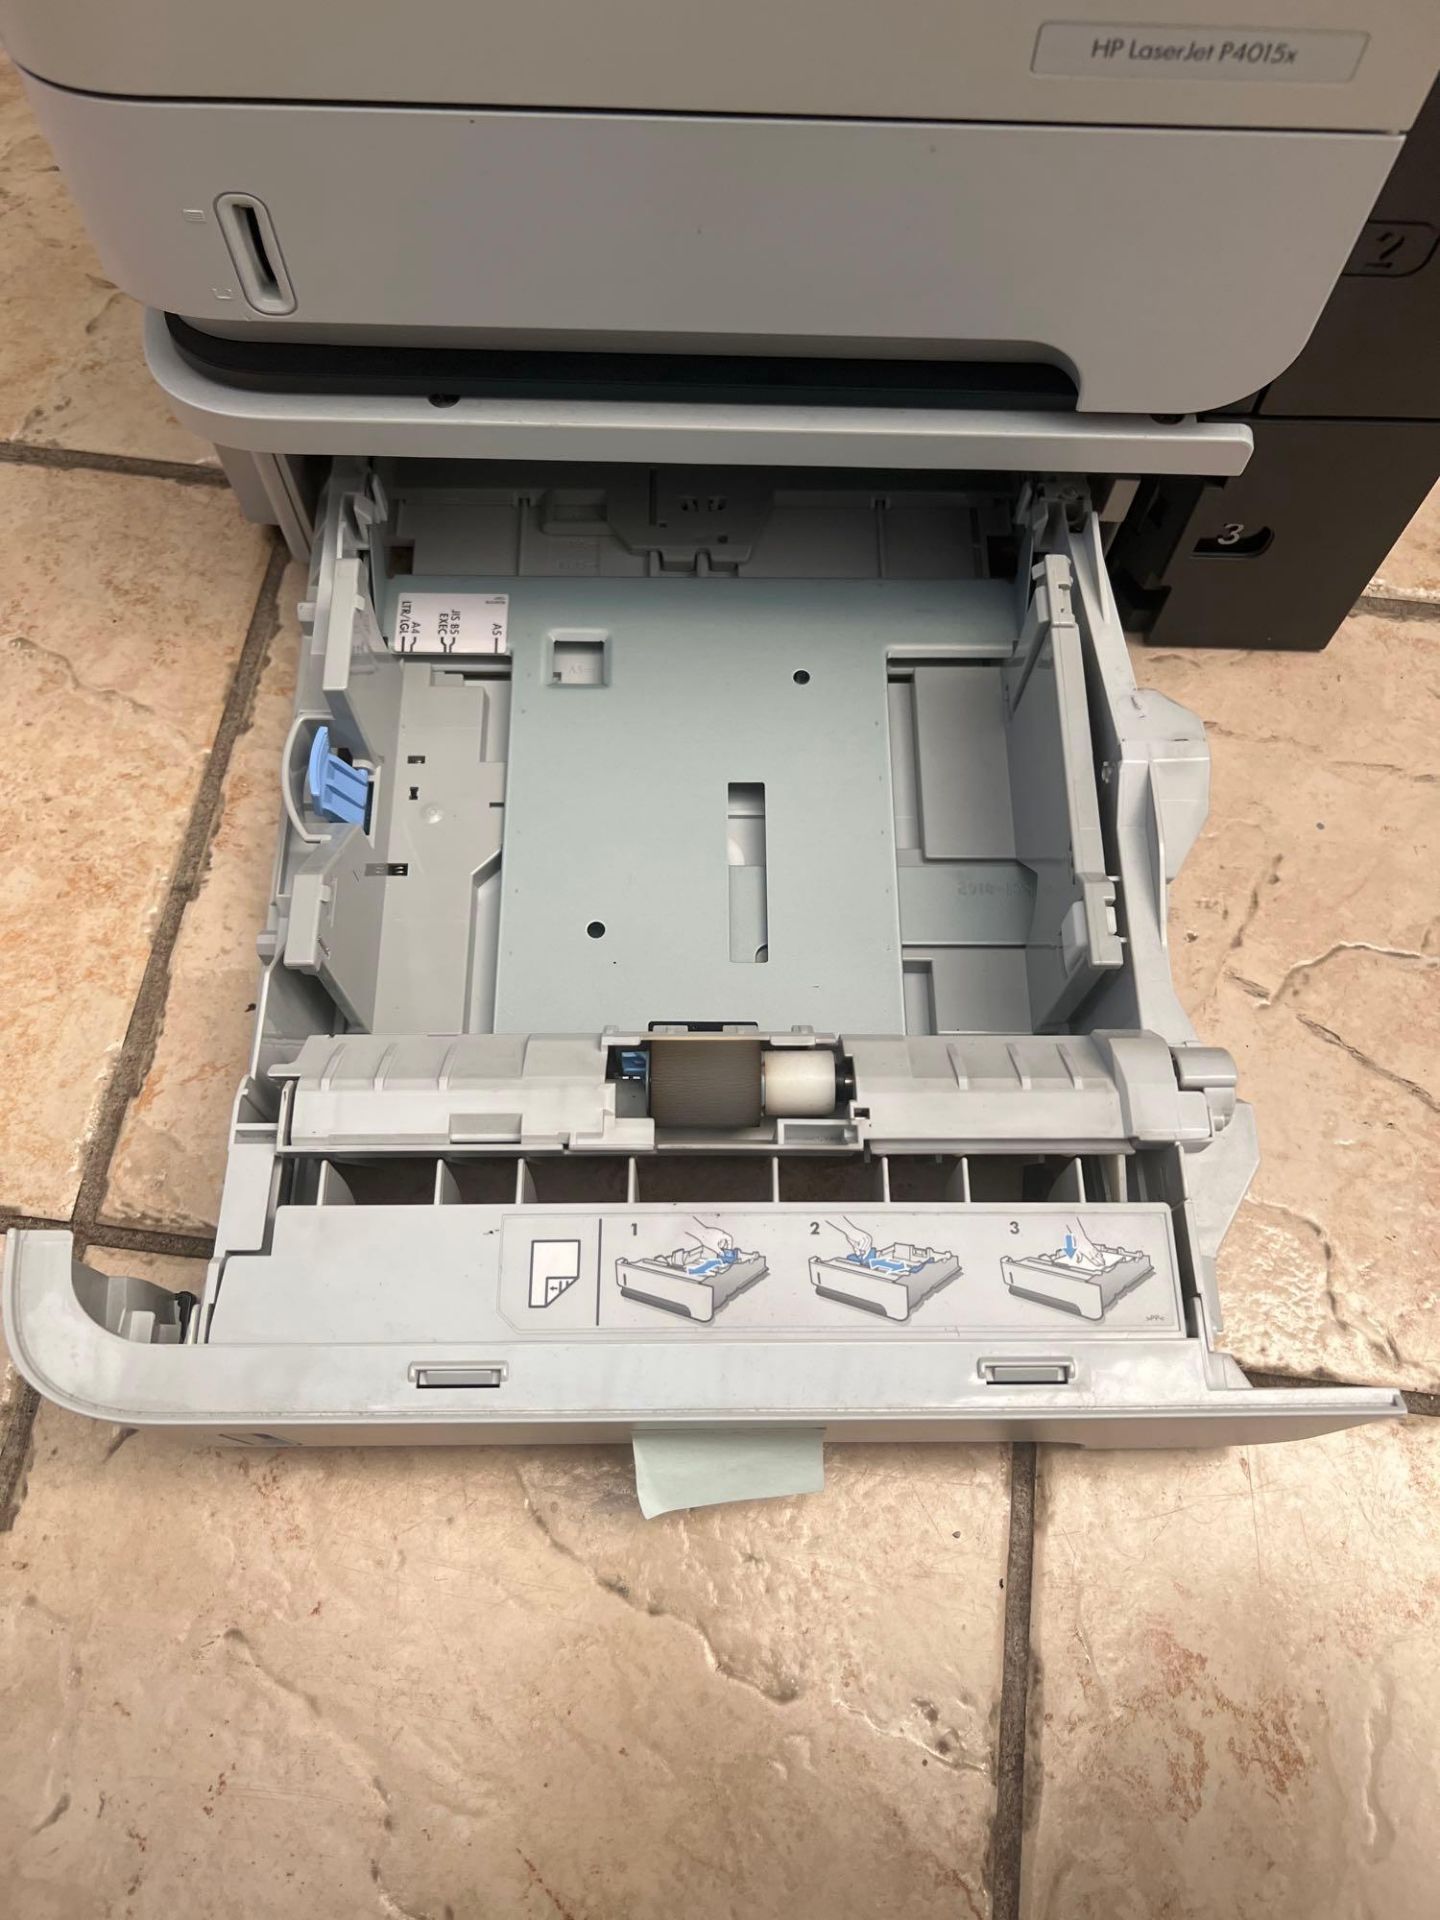 HP LaserJet P4015x Printer - Image 9 of 9